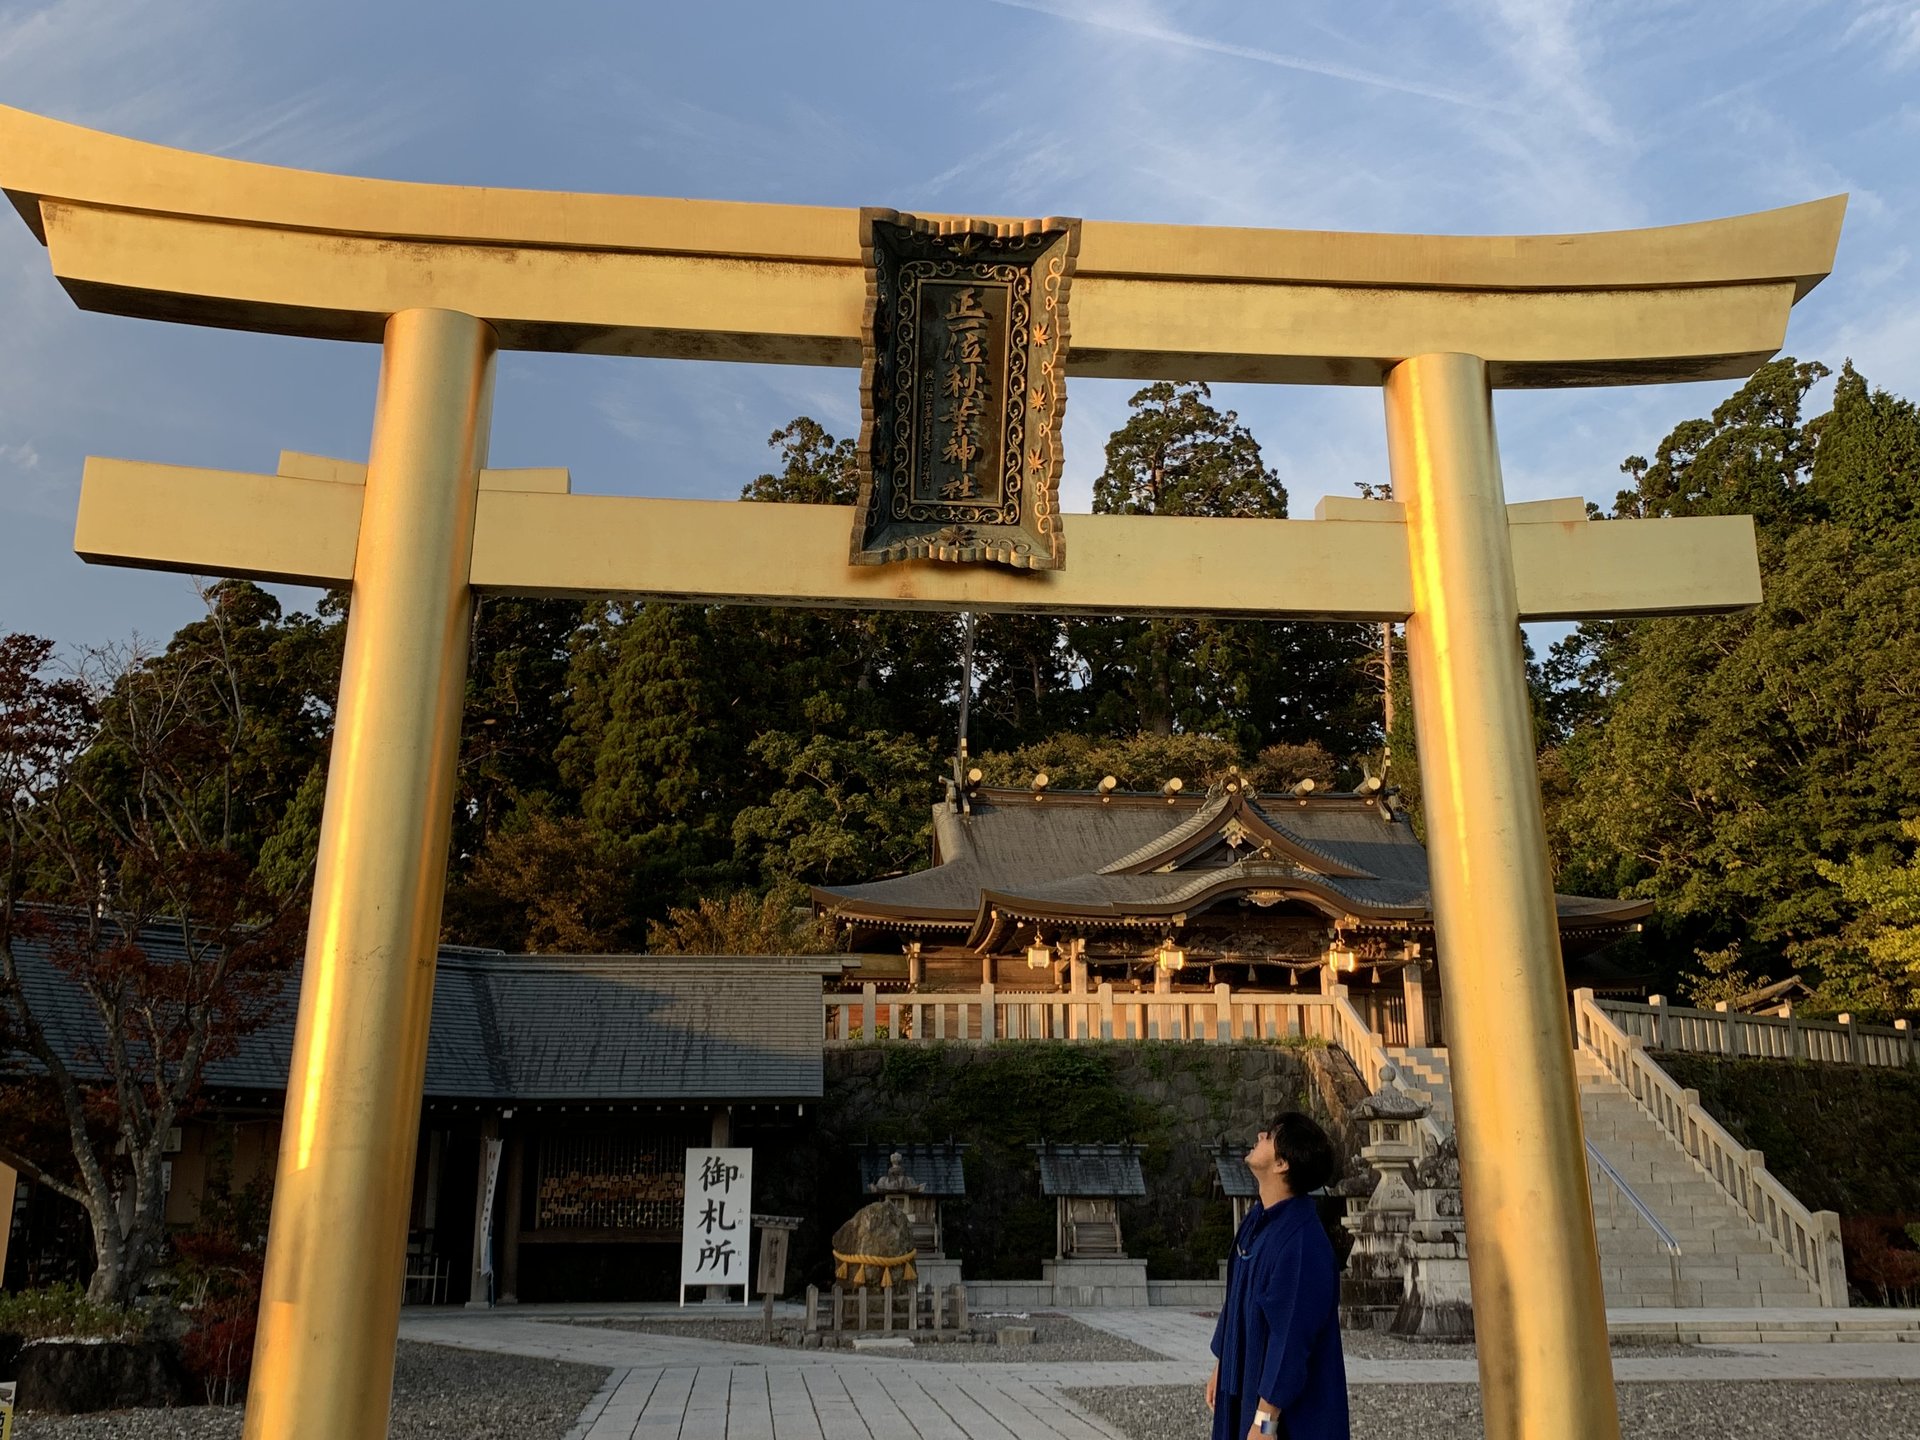 黄金の幸福の鳥居など感動レベルに美しい神社。全国1129社の総本山・秋葉山本宮秋葉神社に行ってきた。